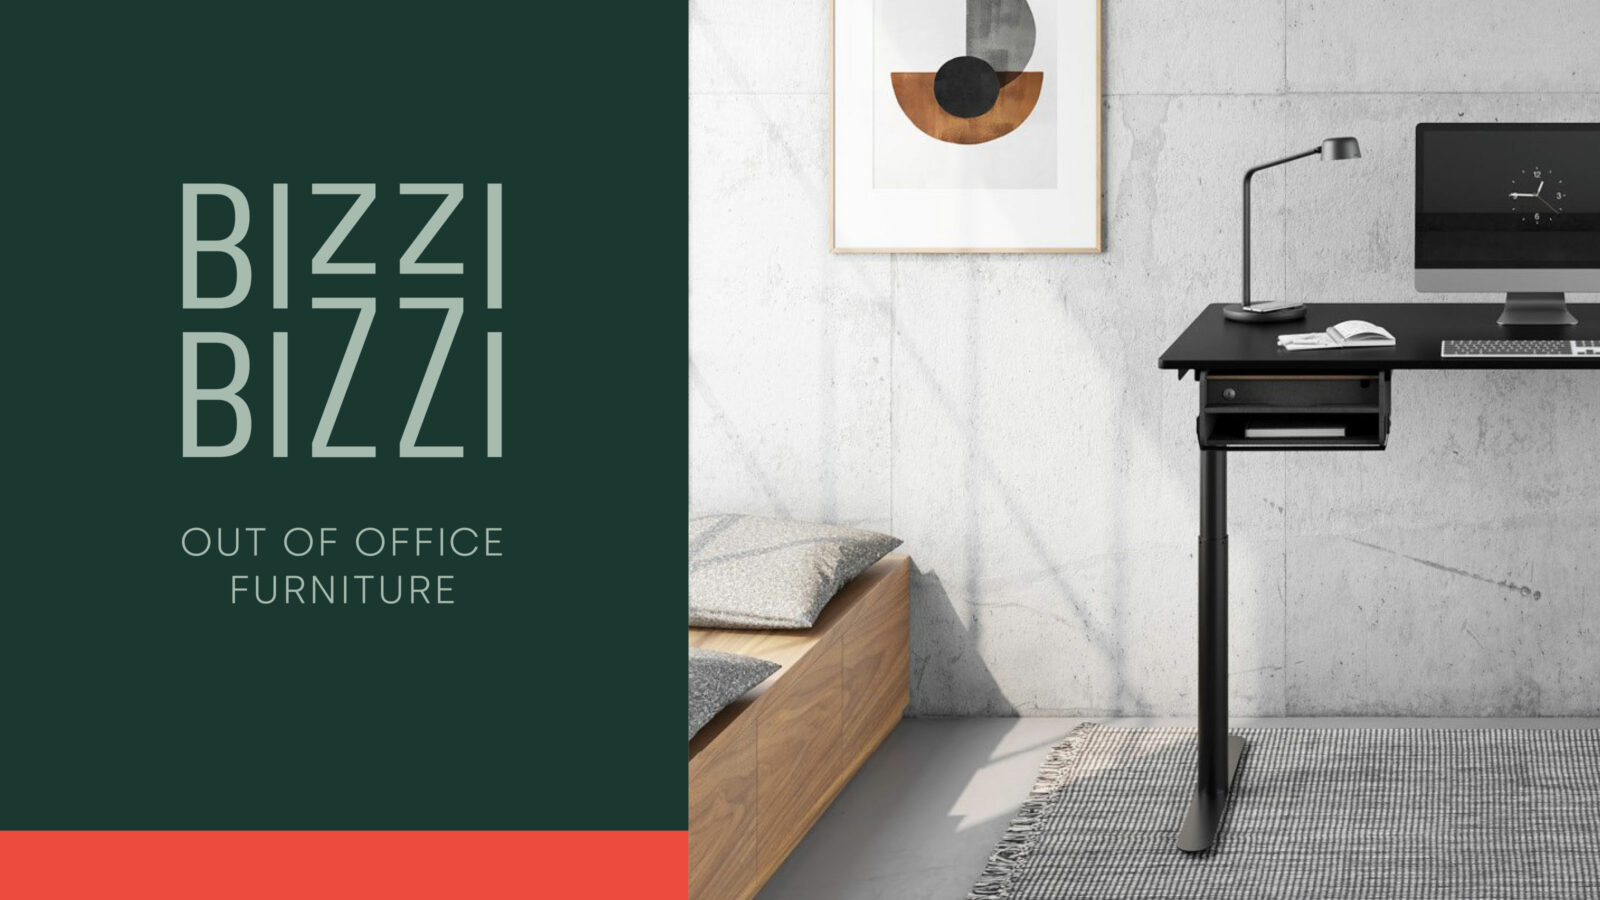 Banner zeigt Ankündigung des BIZZI BIZZI Homeoffice Shops für "Out of office furniture". Im Anschnitt sieht man einen höhenverstellbaren Schreibtisch und eine Sitzbank.